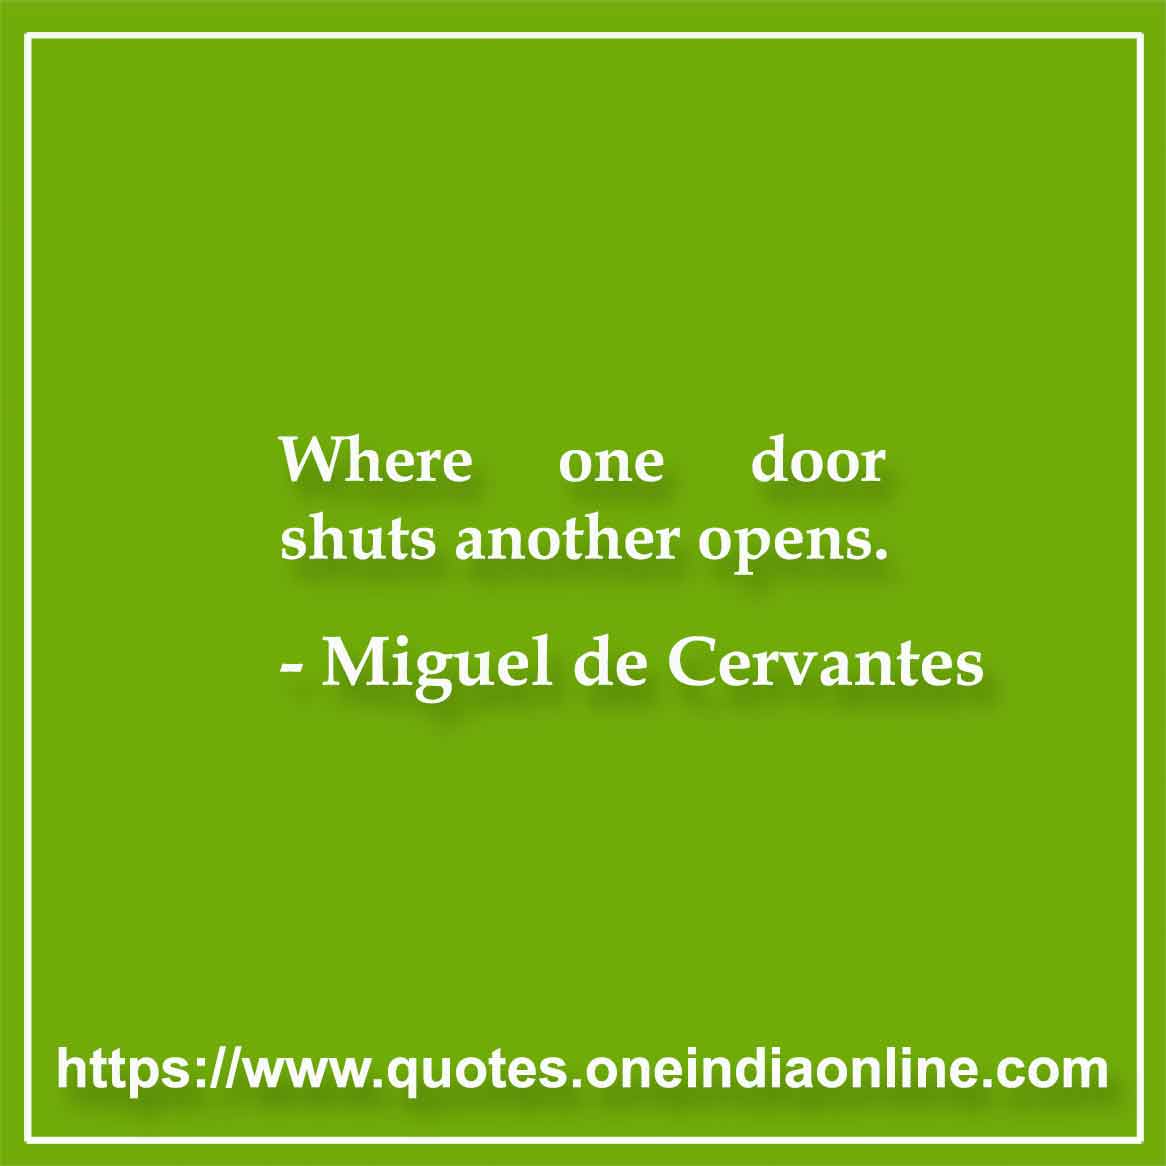 Where one door shuts another opens.

- Miguel de Cervantes